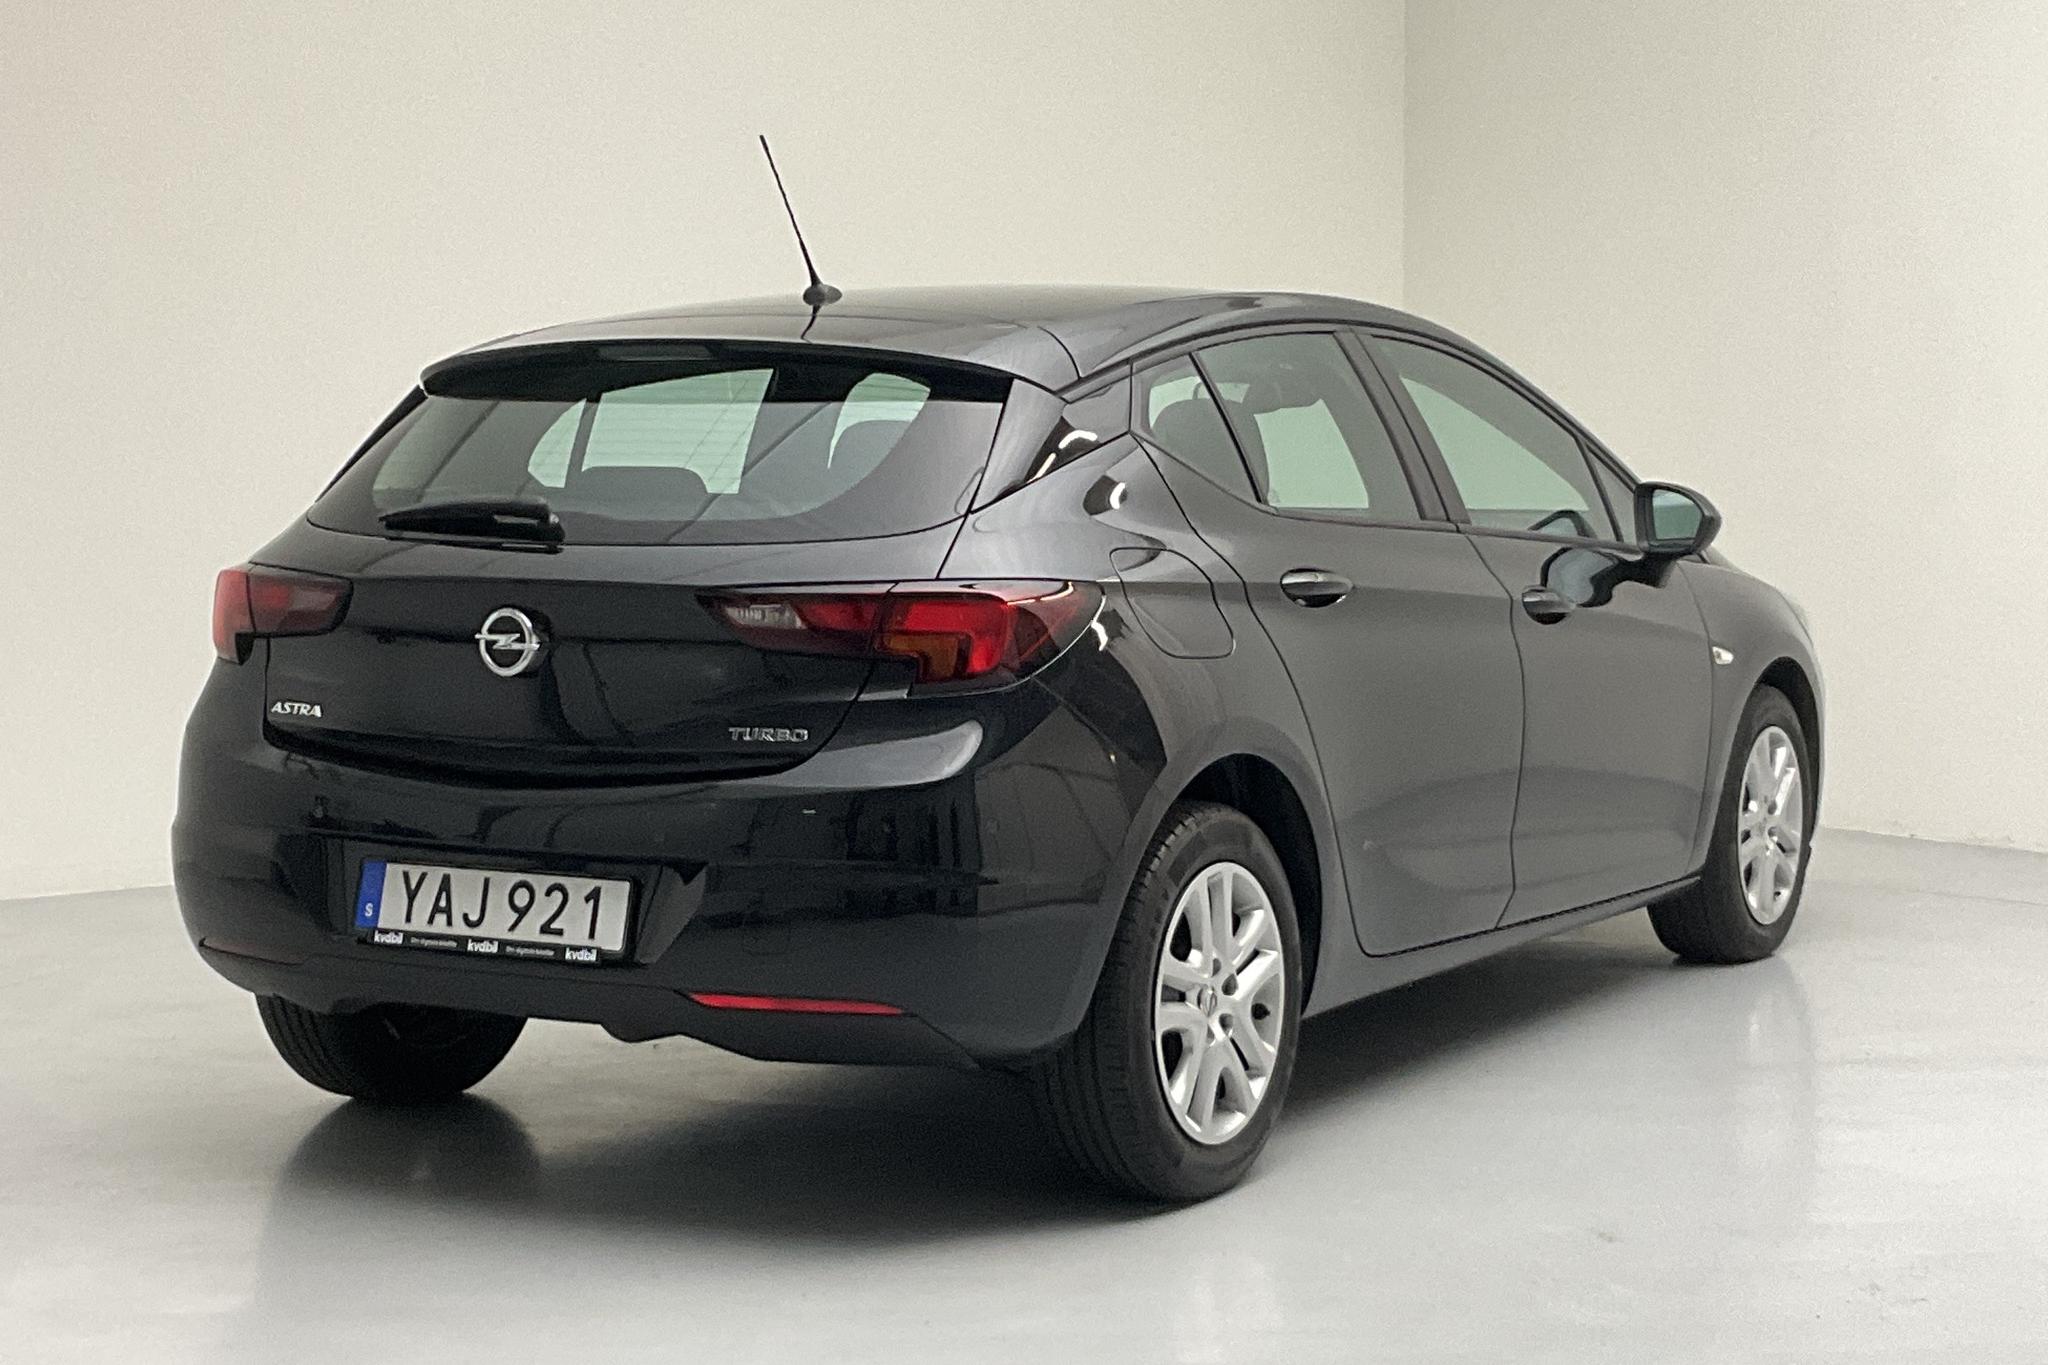 Opel Astra 1.4 Turbo ECOTEC 5dr (150hk) - 38 060 km - Manual - black - 2016